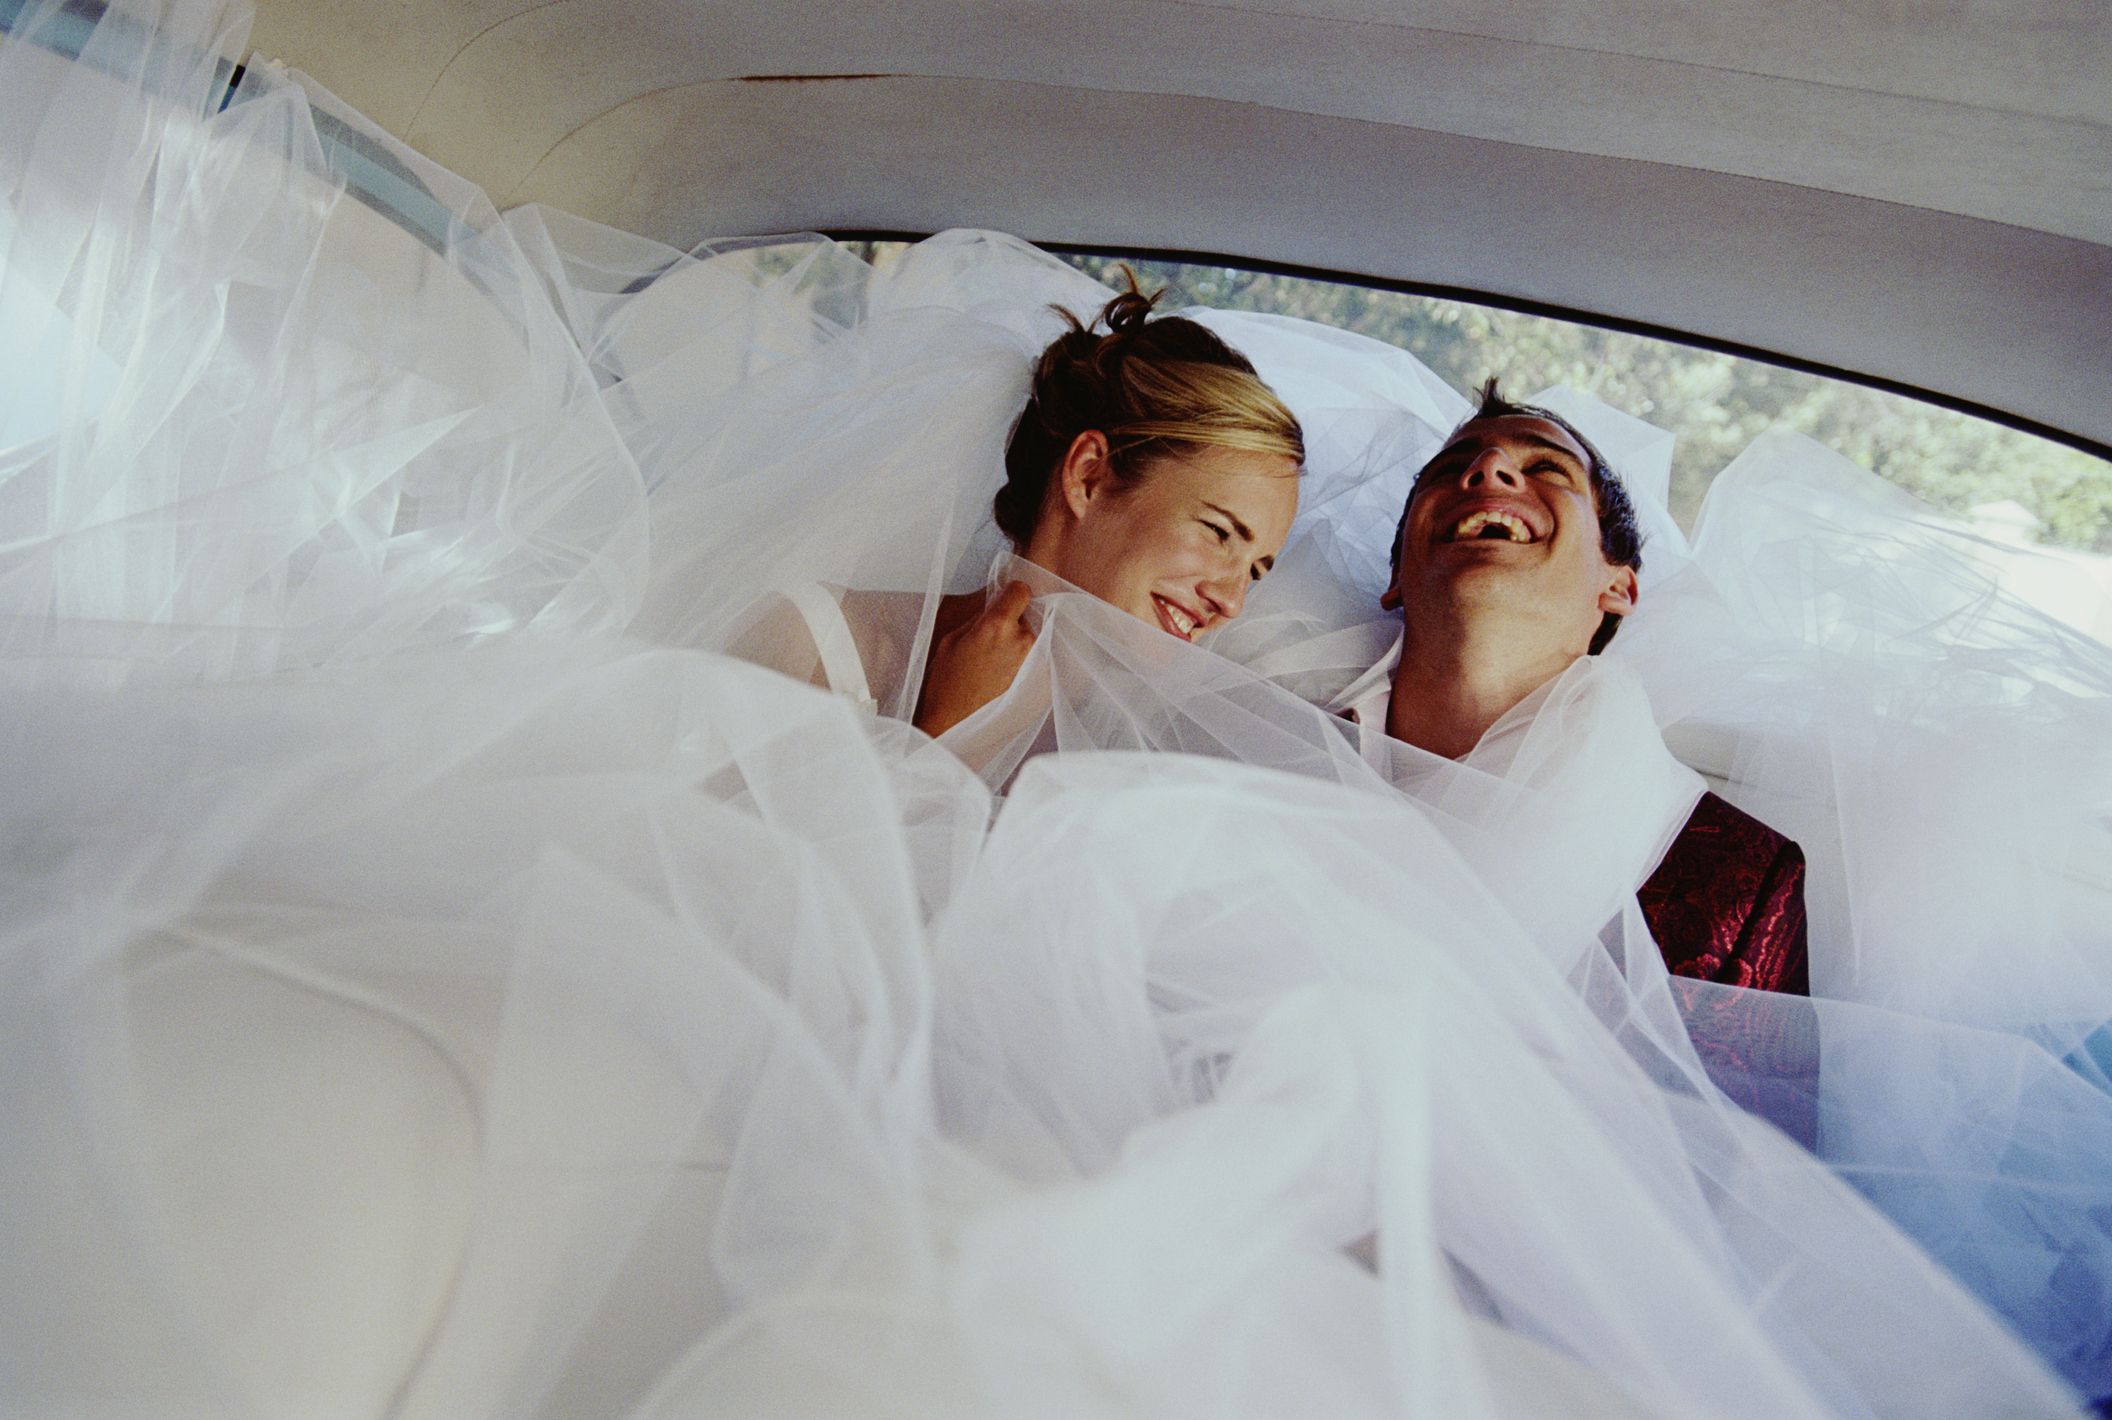 Regalos personalizados de boda: ideas para hacerlos en casa